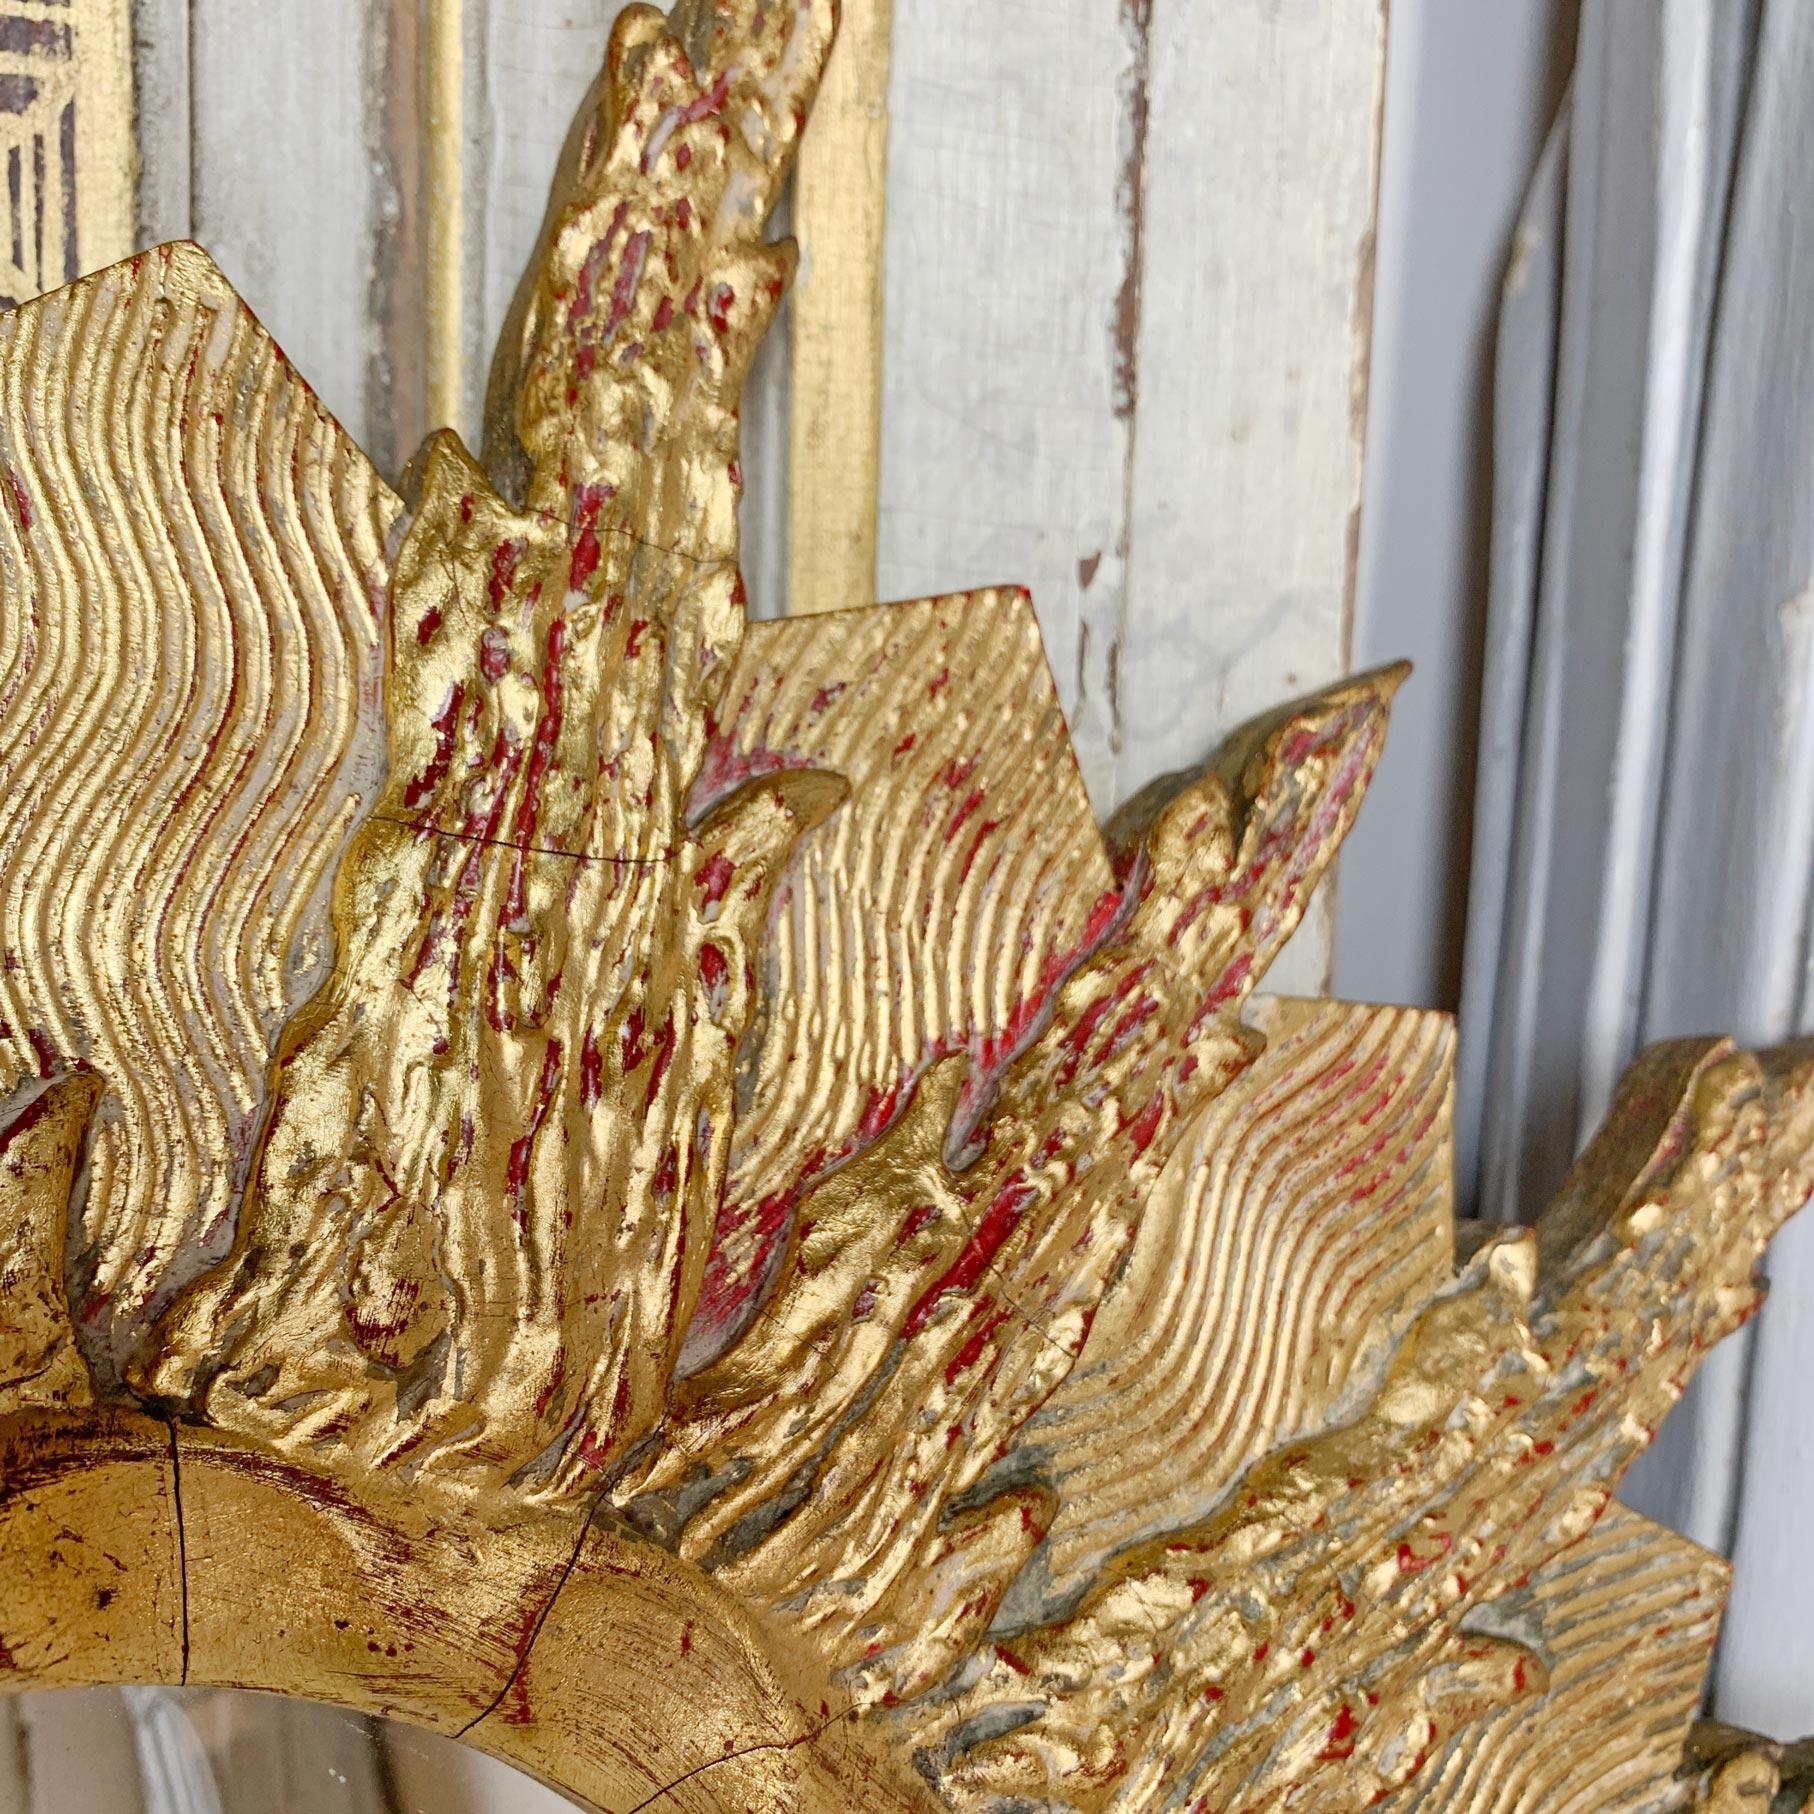 Miroir en bois doré sculpté à la main, très décoratif et inhabituel, datant des années 1960, avec plaque de miroir d'origine. De grandes proportions, il s'agit d'un miroir au soleil du milieu du siècle au design très inhabituel. 

Mesures : largeur